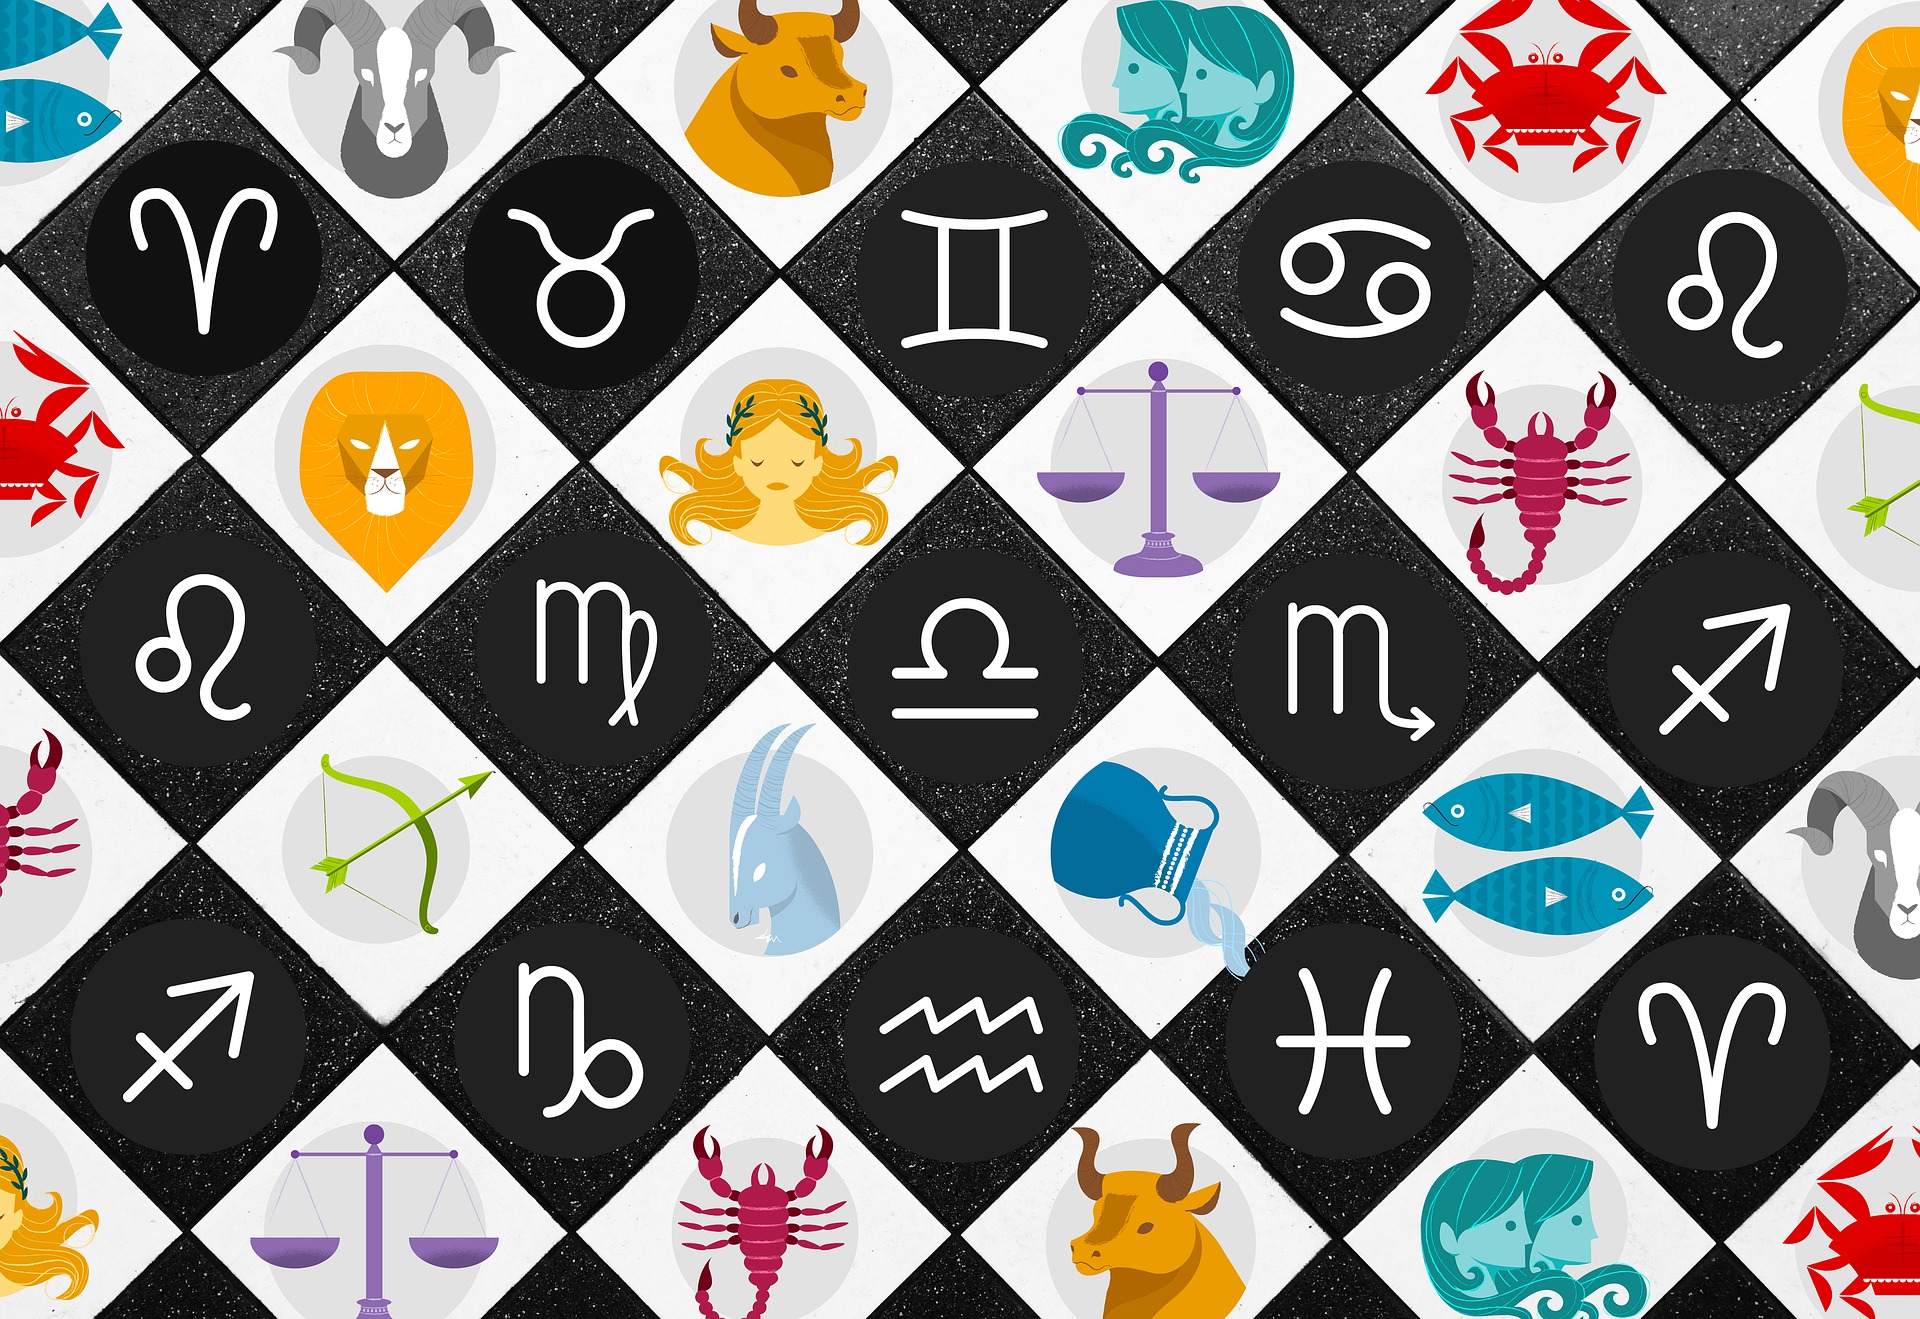 Horoskop pro nezadané přinese mnoho zajímavých informací. Jak s nimi naložíte?